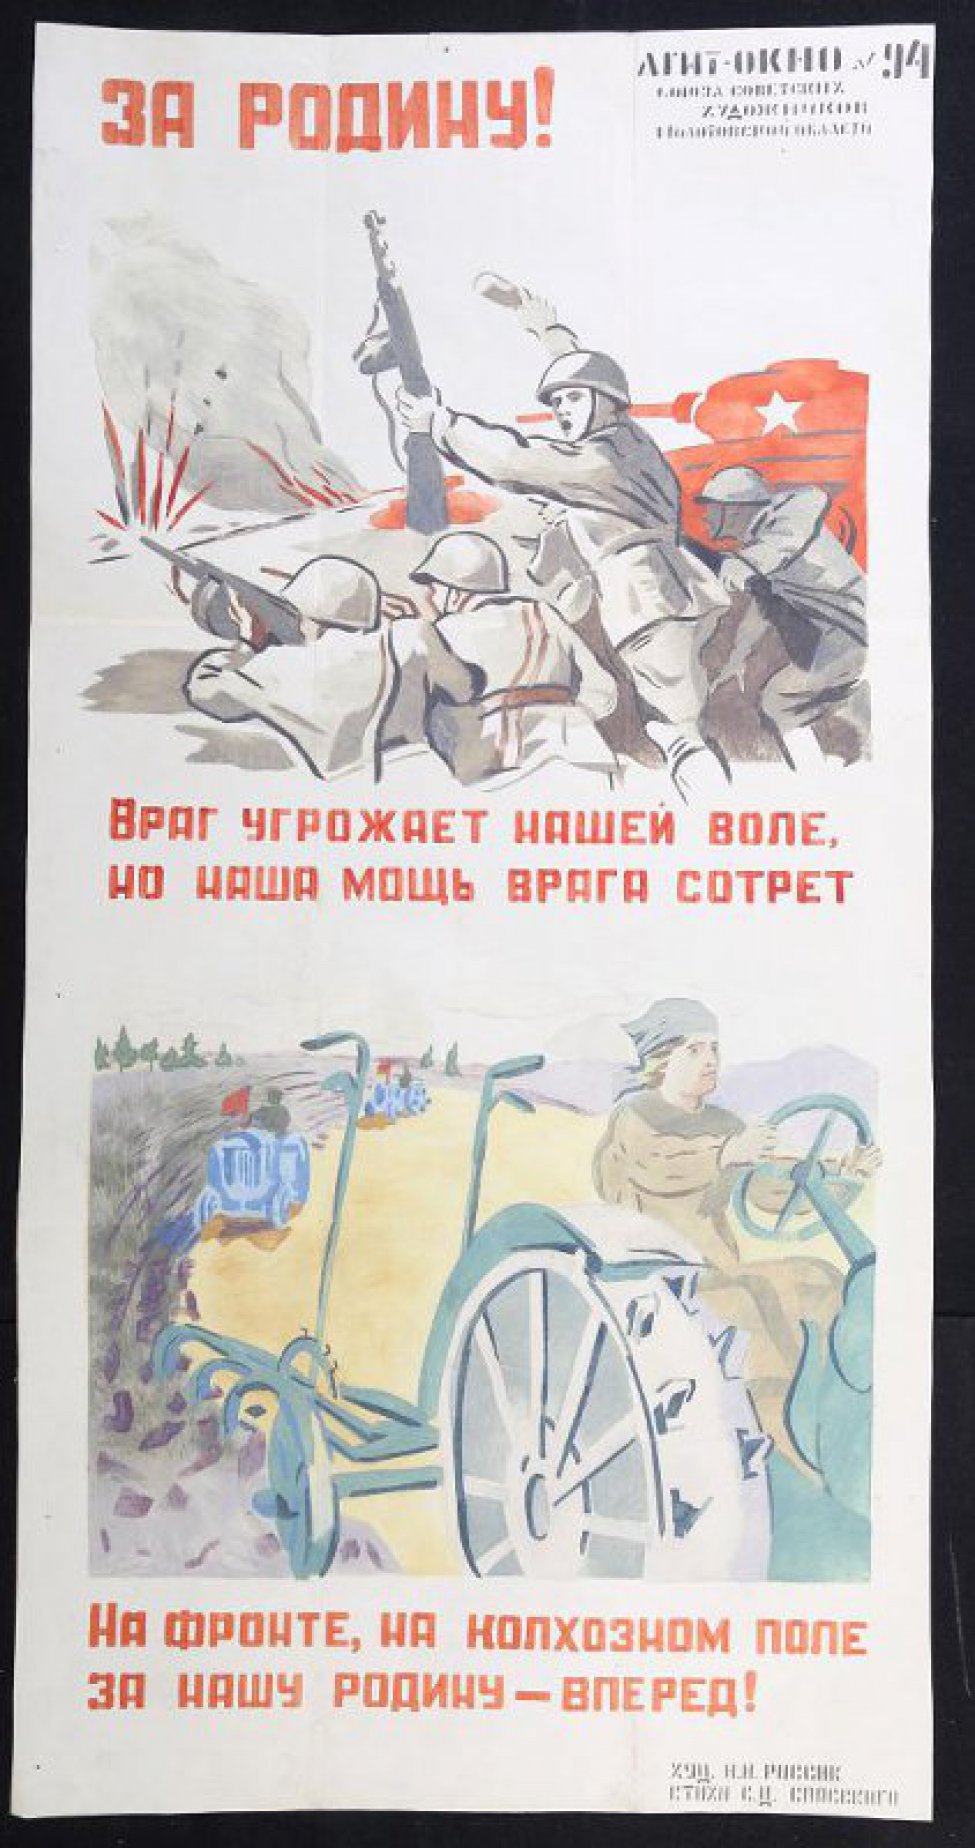 Помещено 2 рисунка: 1) советские бойцы идут в наступление, вдали взрывы, текст: "Враг угрожает нашей воле, но наша мощь врага сотрет..."; 2) женщина за рулем трактора, текст: "На фронте, на колхозном поле за нашу Родину - вперед!"